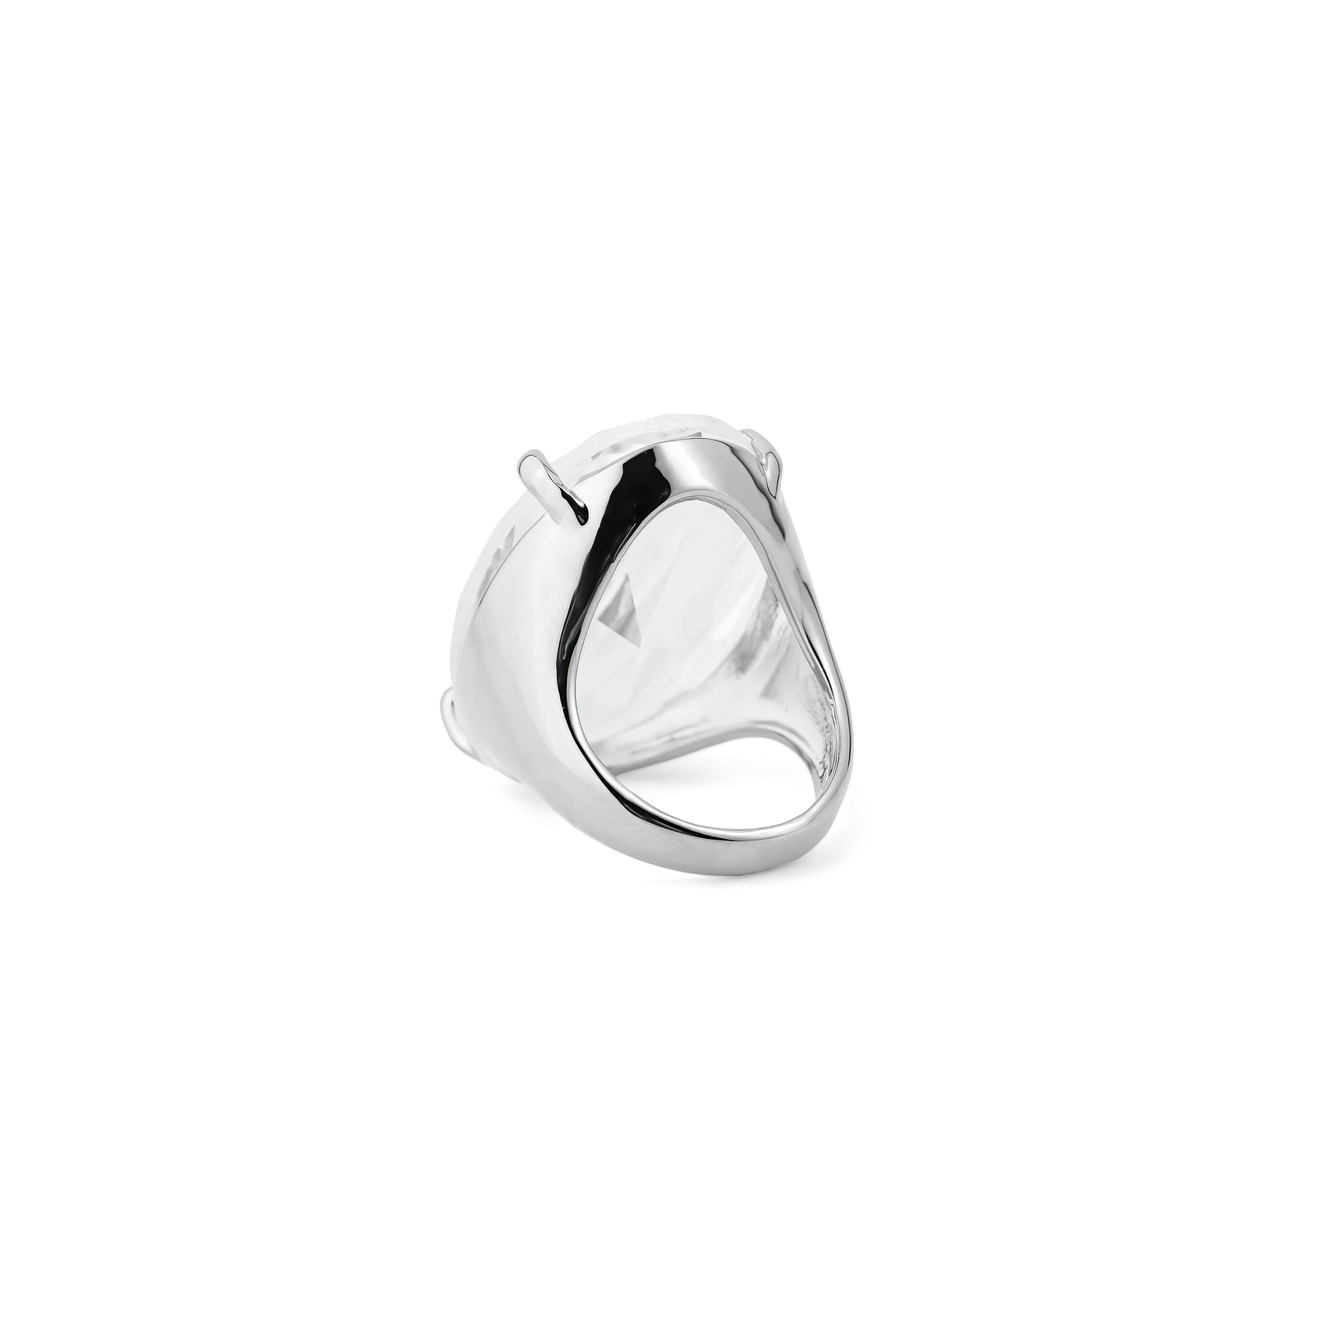 Herald Percy Серебристое кольцо с овальным кристаллом herald percy золотистая цепочка с подвеской каплей с кристаллом